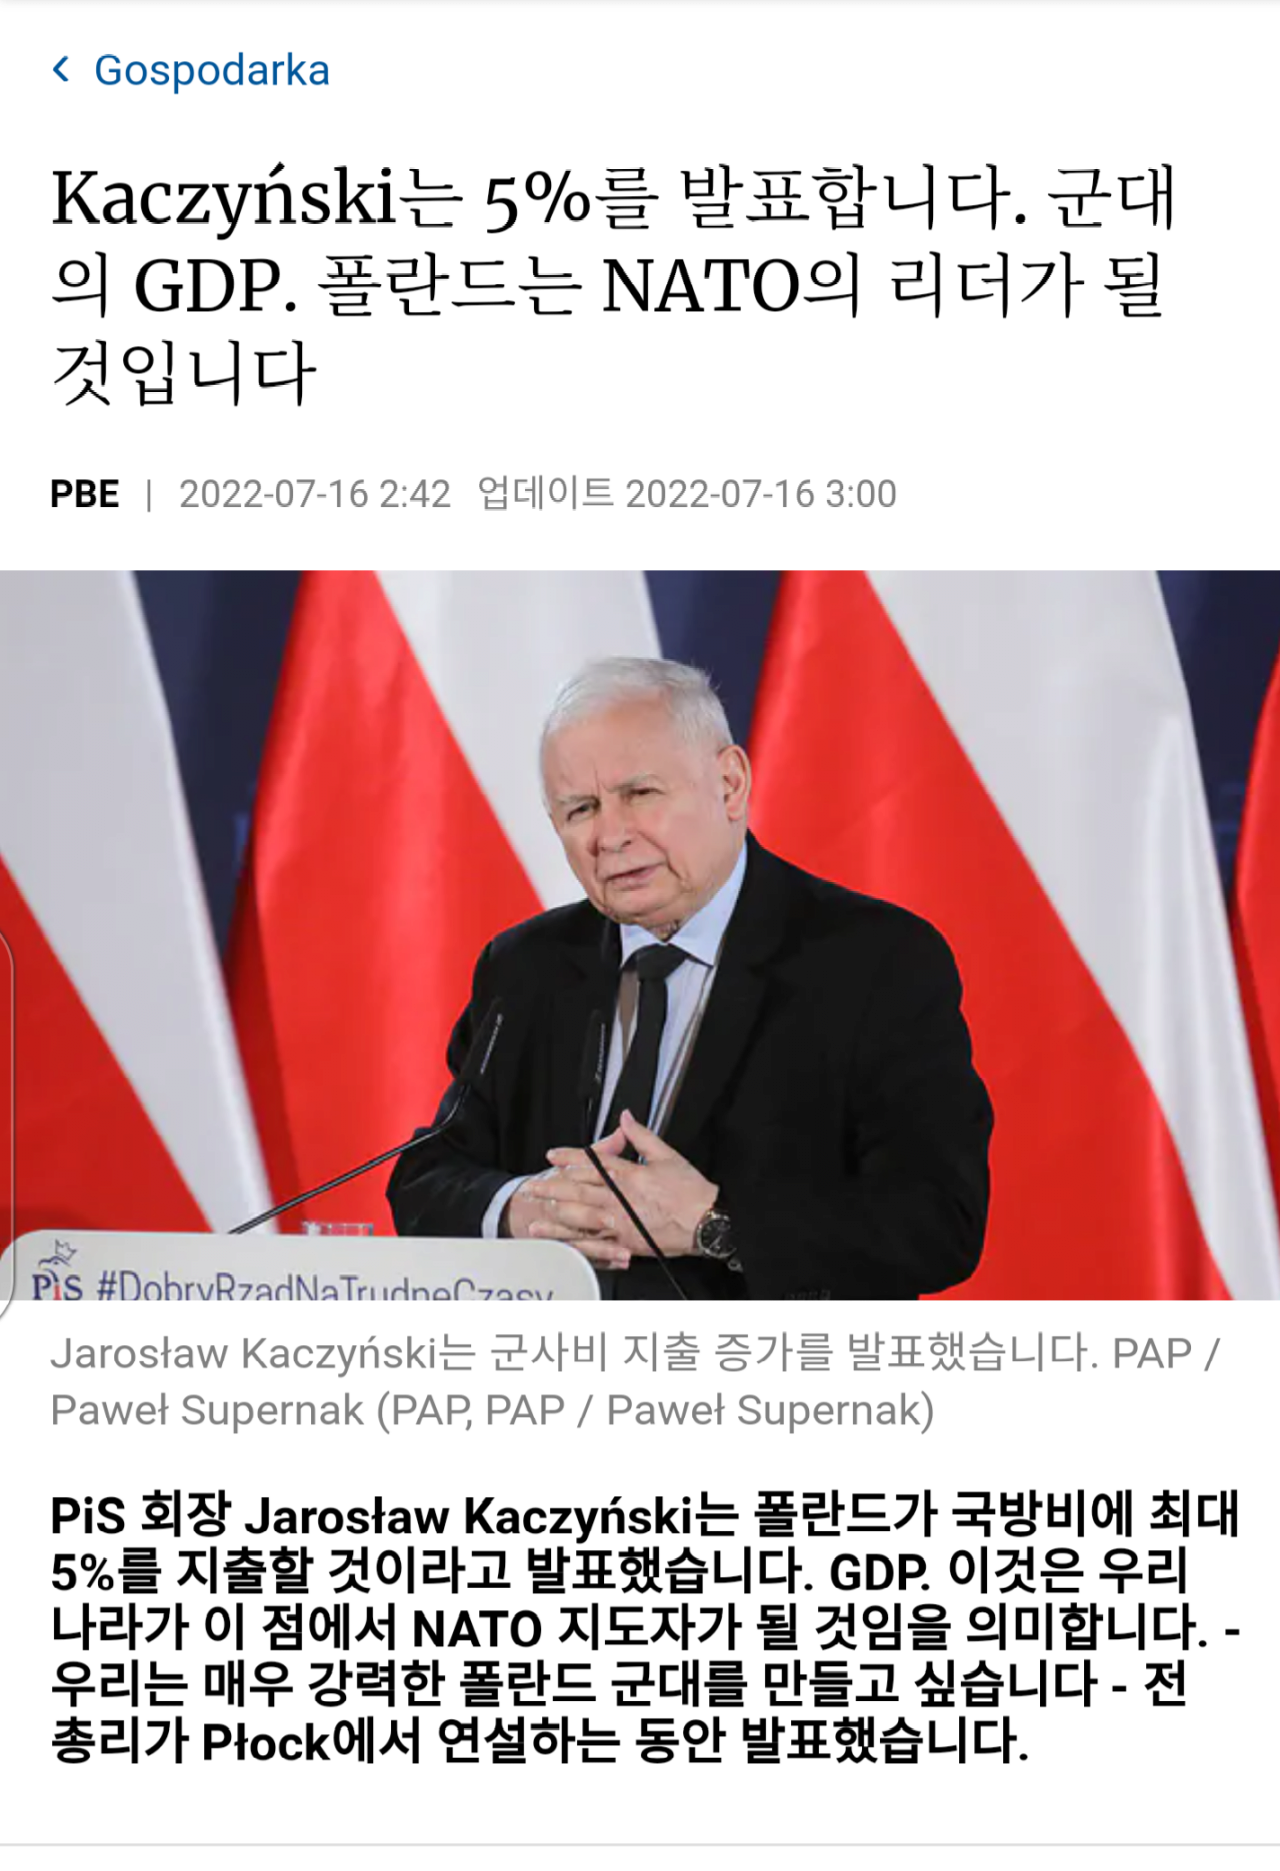 ●ますます勢力が拡大する韓国とポーランドの軍事協力